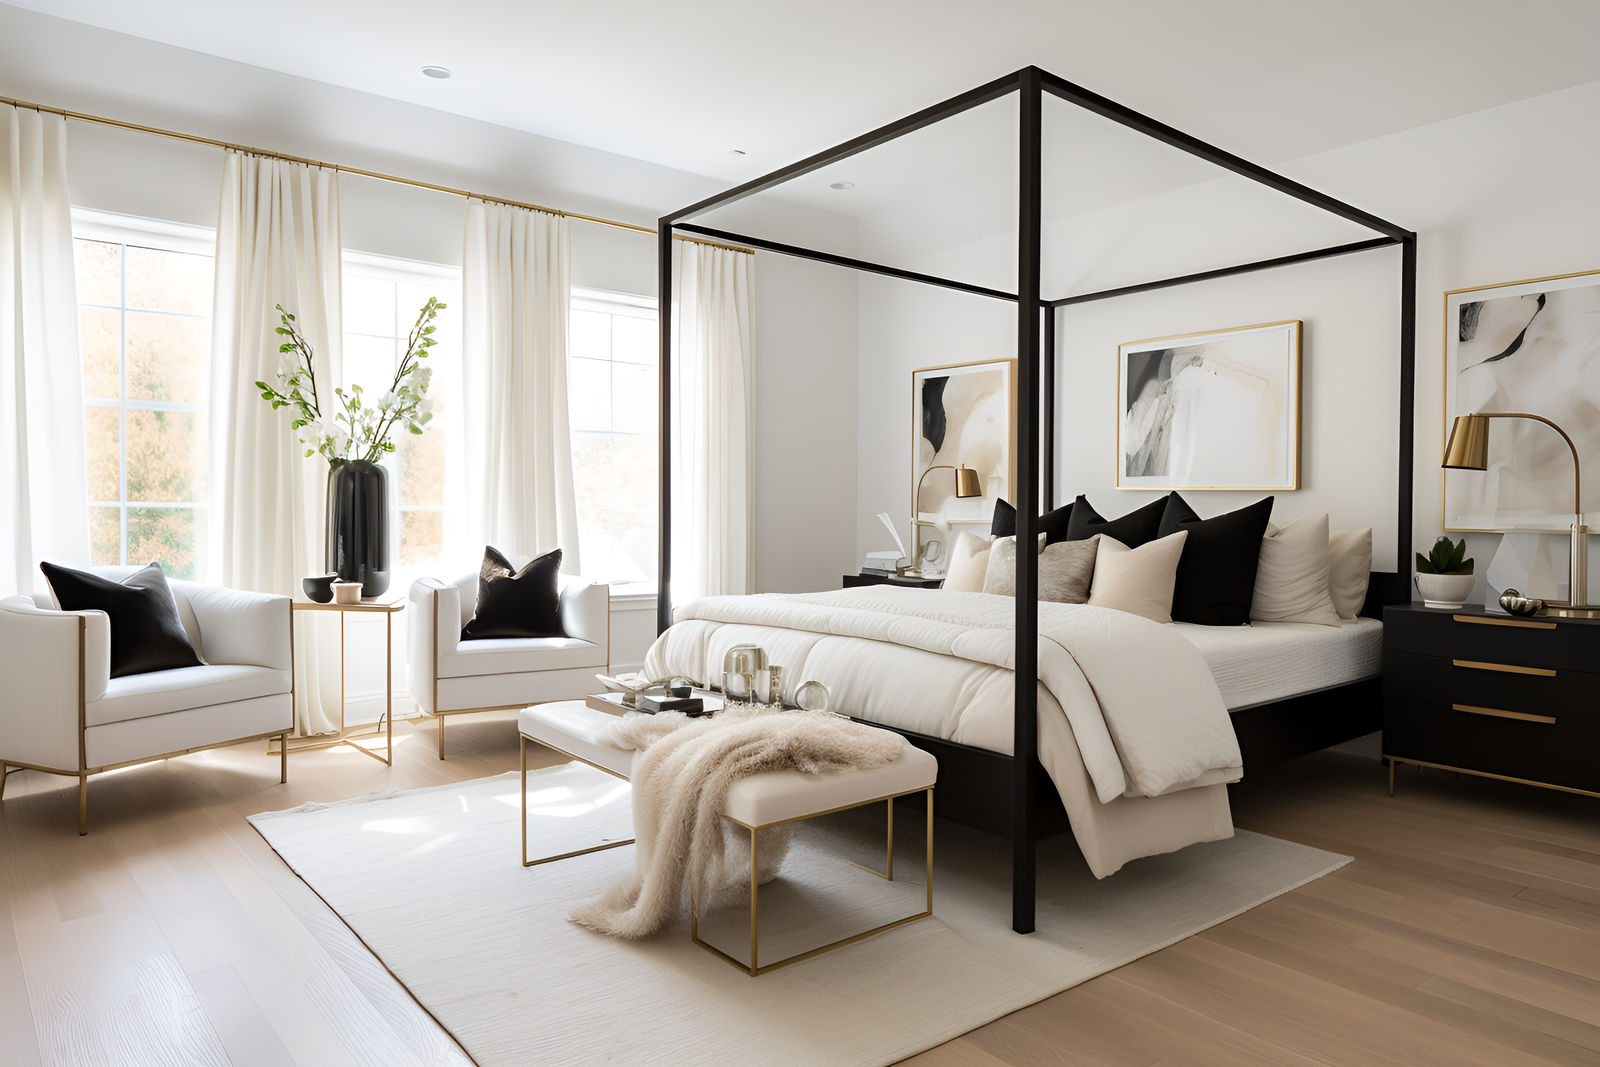 Bedroom Interior Designers Top